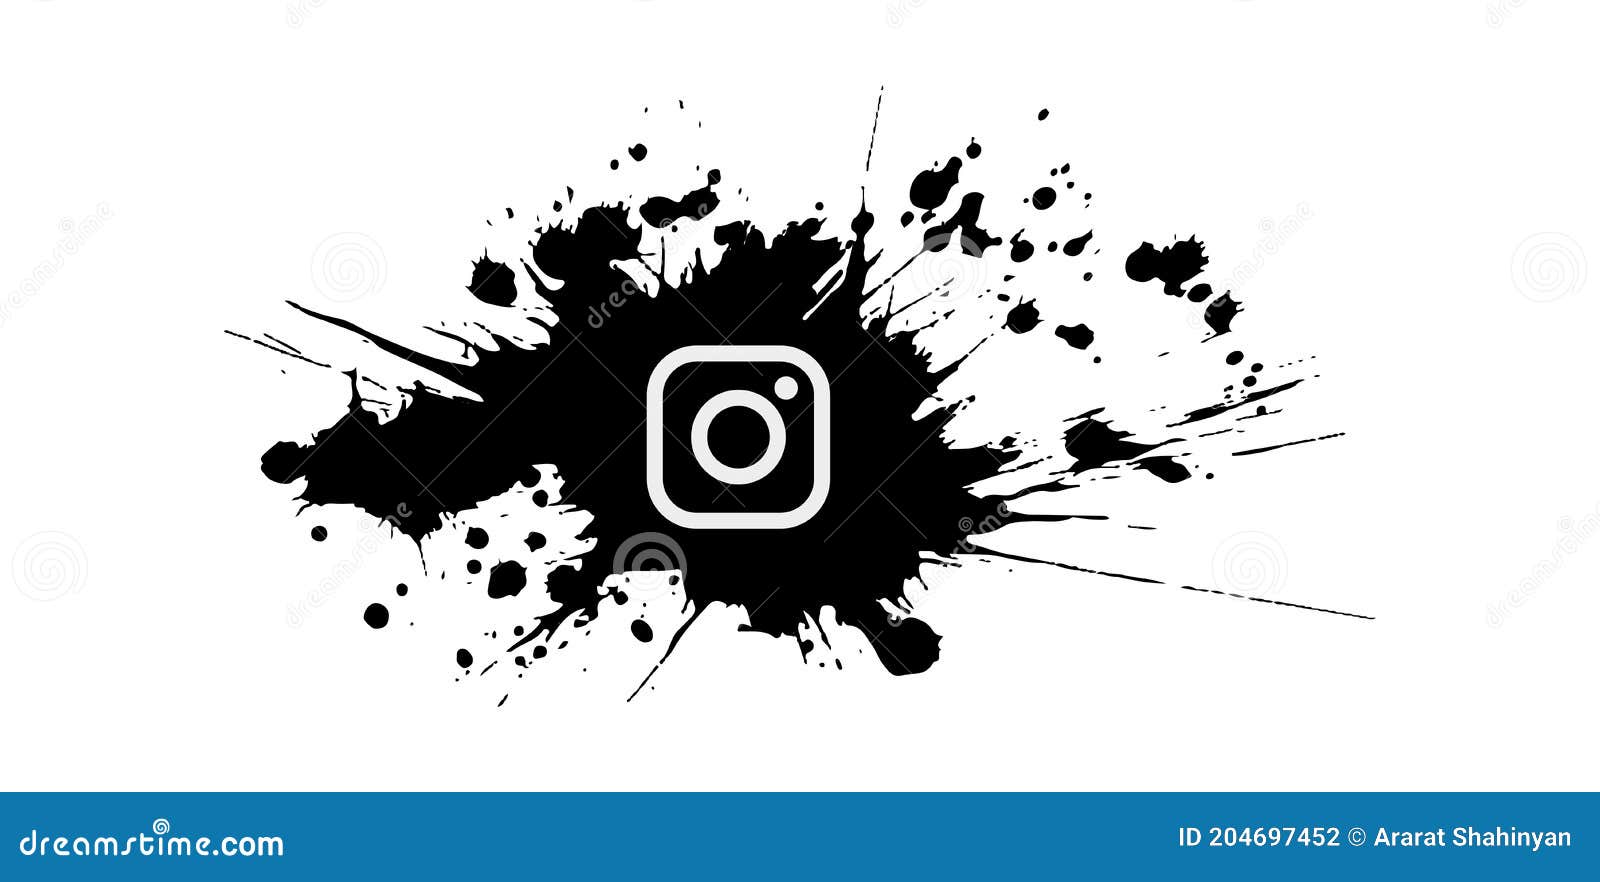 Logo Instagram đen trắng luôn phong cách và tinh tế. Nếu bạn muốn thiết kế trang web của mình trông đơn giản và hiện đại thì logo Instagram đen trắng là một trong những lựa chọn tốt nhất cho bạn. Chúng tôi cung cấp logo Instagram đen trắng với chất lượng full HD và hoàn toàn miễn phí.